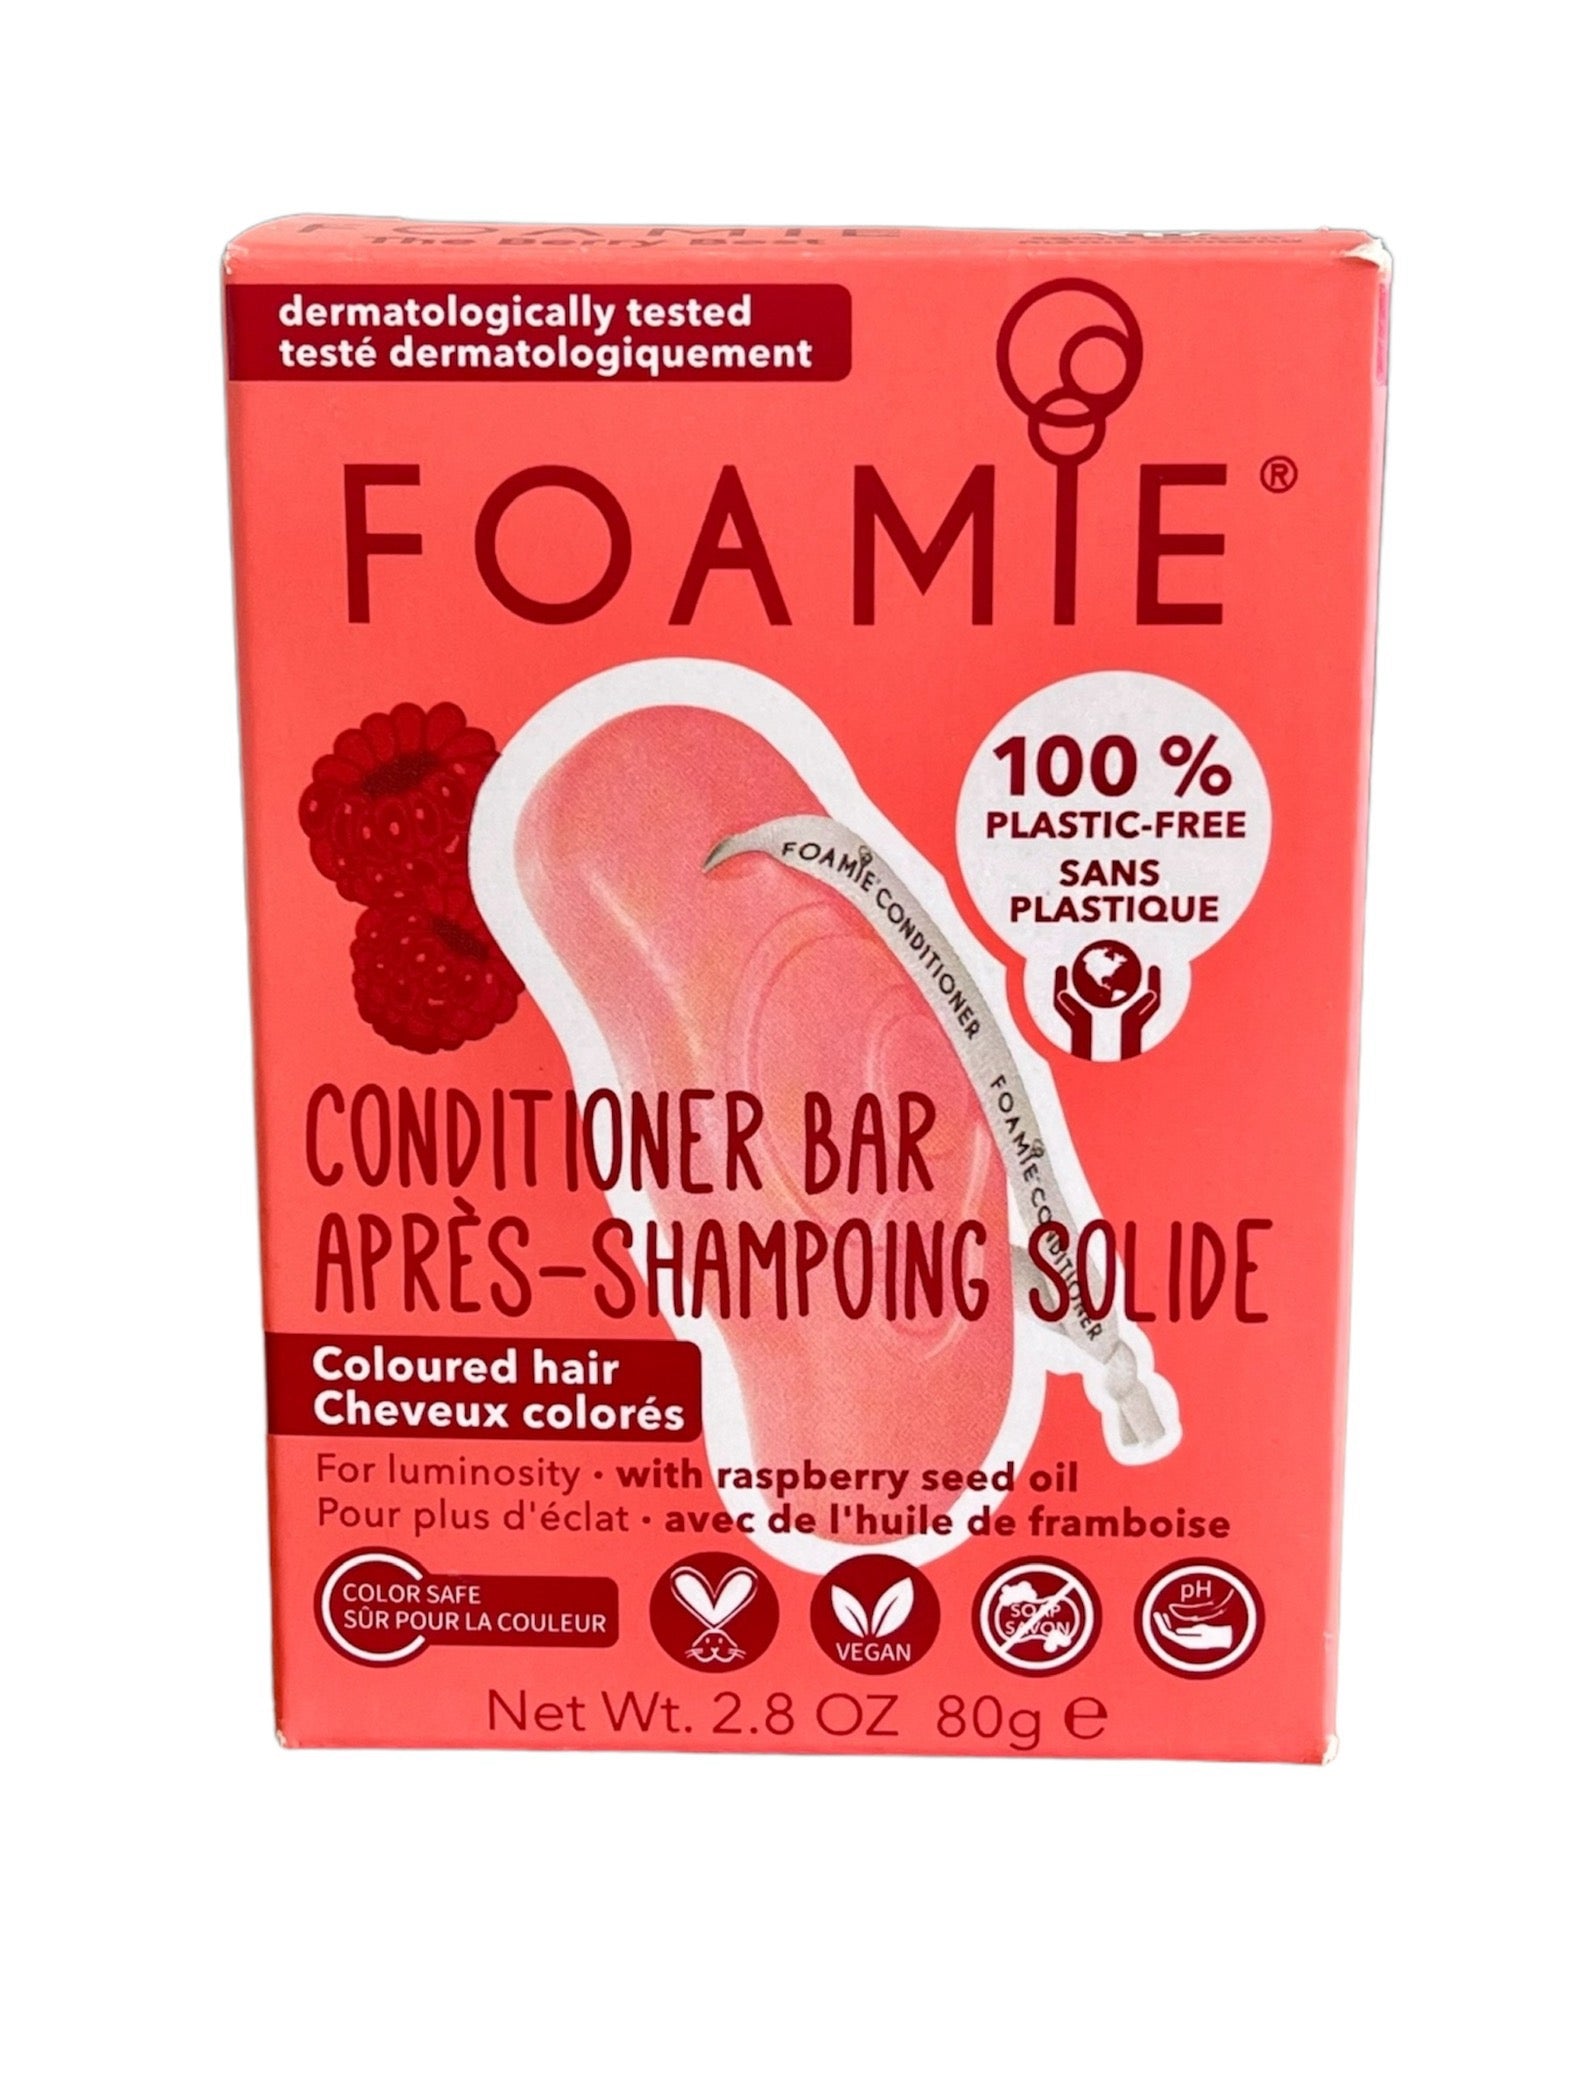 "Foamie Conditioner Bar voor gekleurd haar - The Berry Best in milieuvriendelijke verpakking."